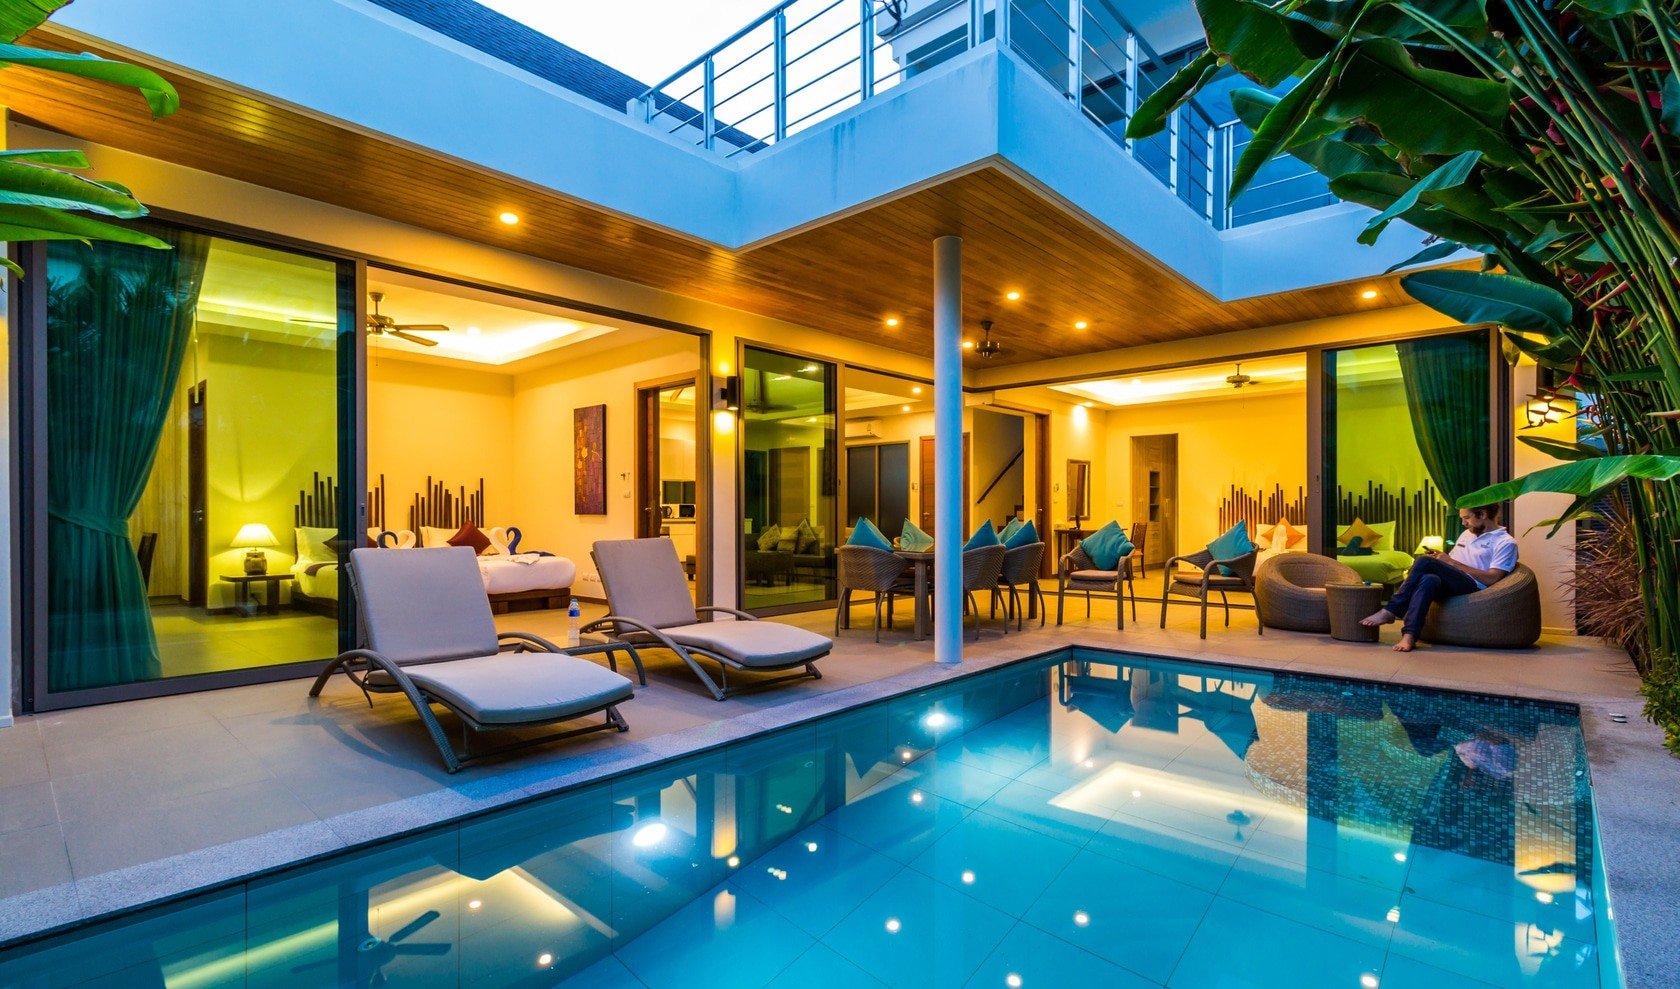 villa interior and pool complete